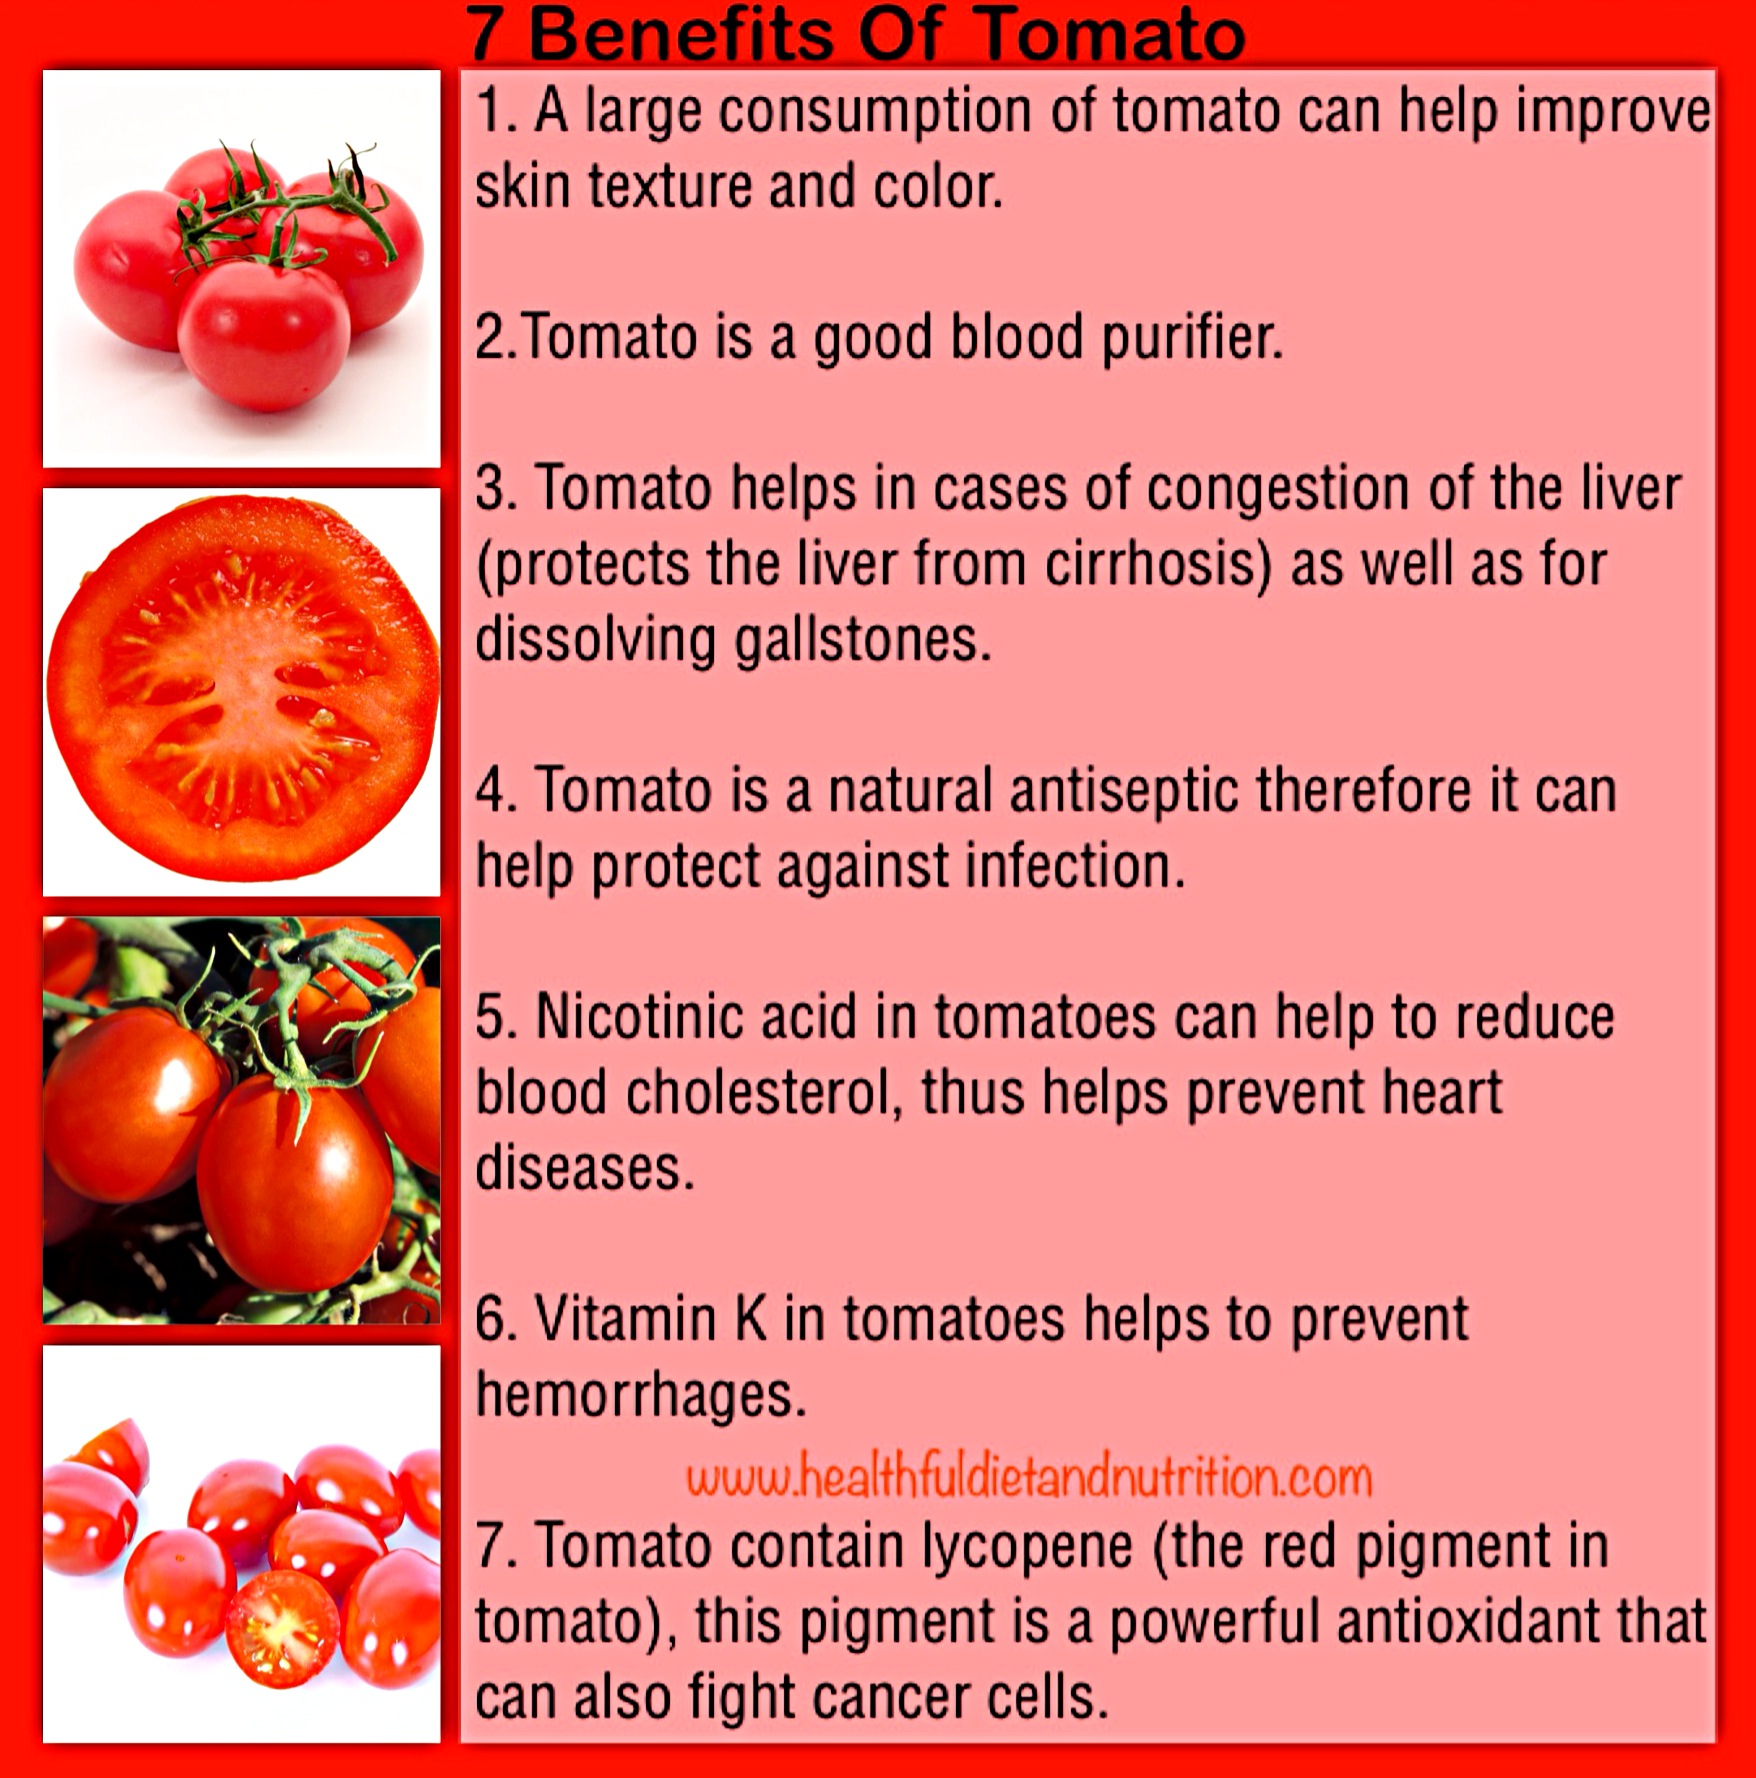 7 Benefits of Tomato